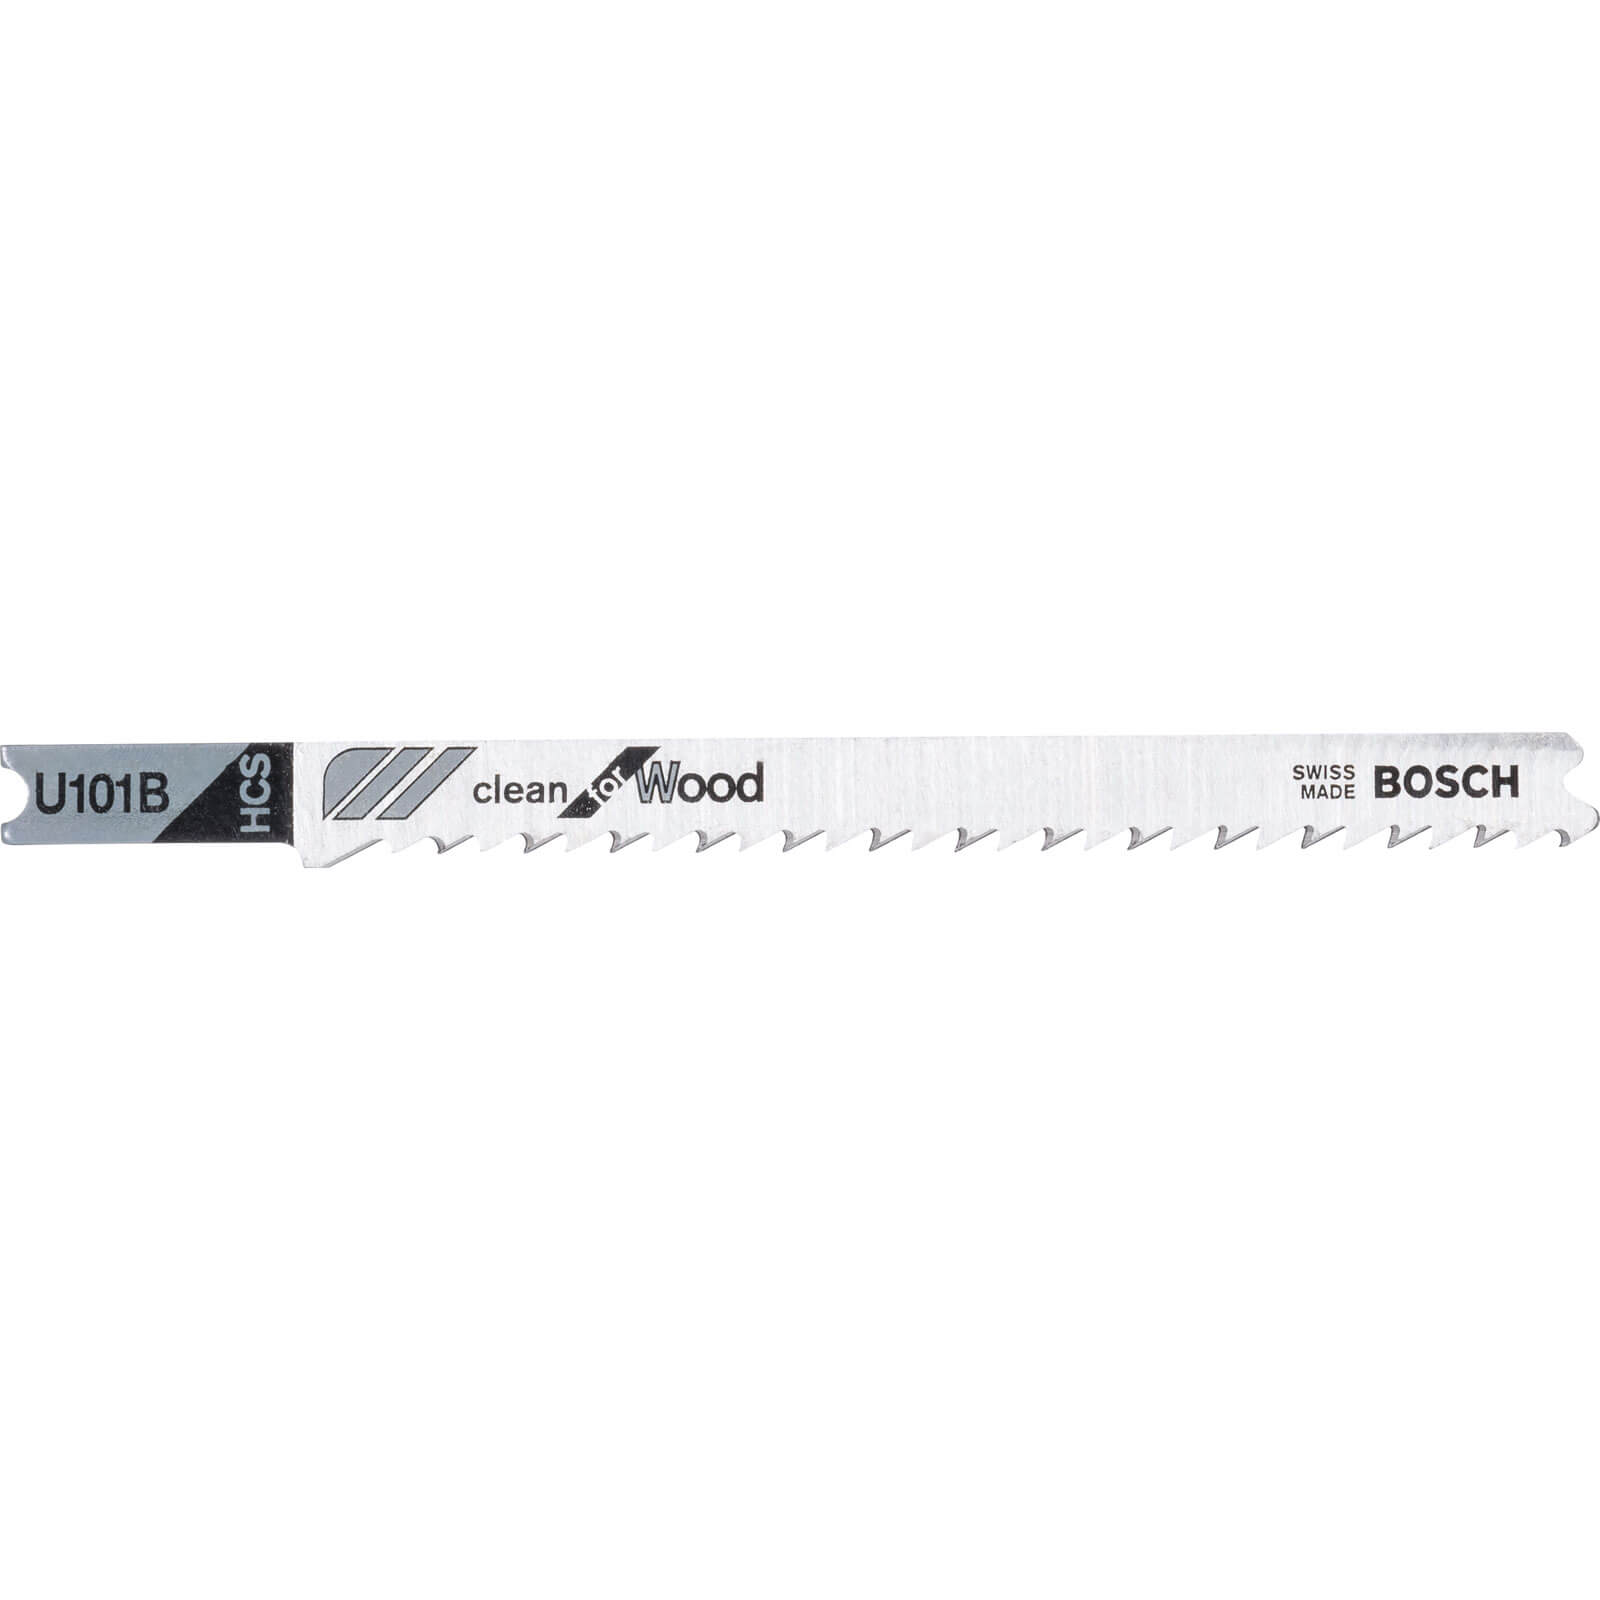 Image of Bosch U101 B Wood Cutting Jigsaw Blades Pack of 3